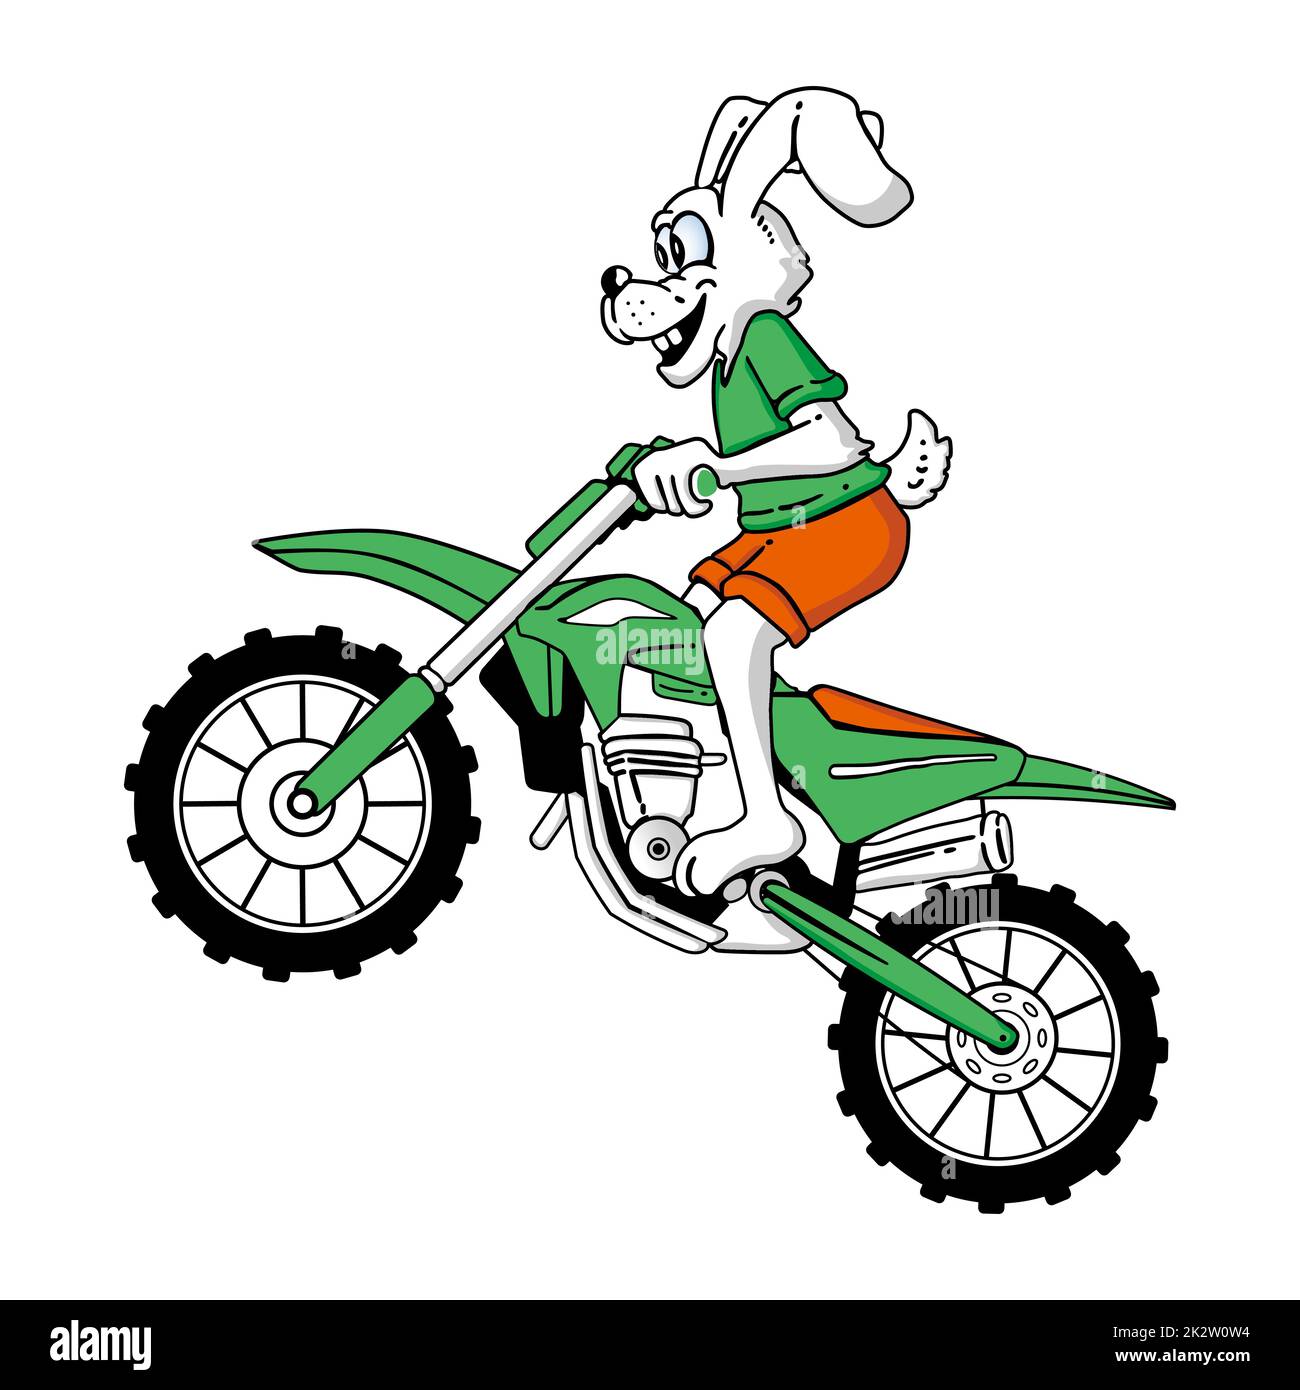 Eine grafische Darstellung eines Hasen, der auf einem Motorrad auf einem  weißen Hintergrund fährt Stock-Vektorgrafik - Alamy